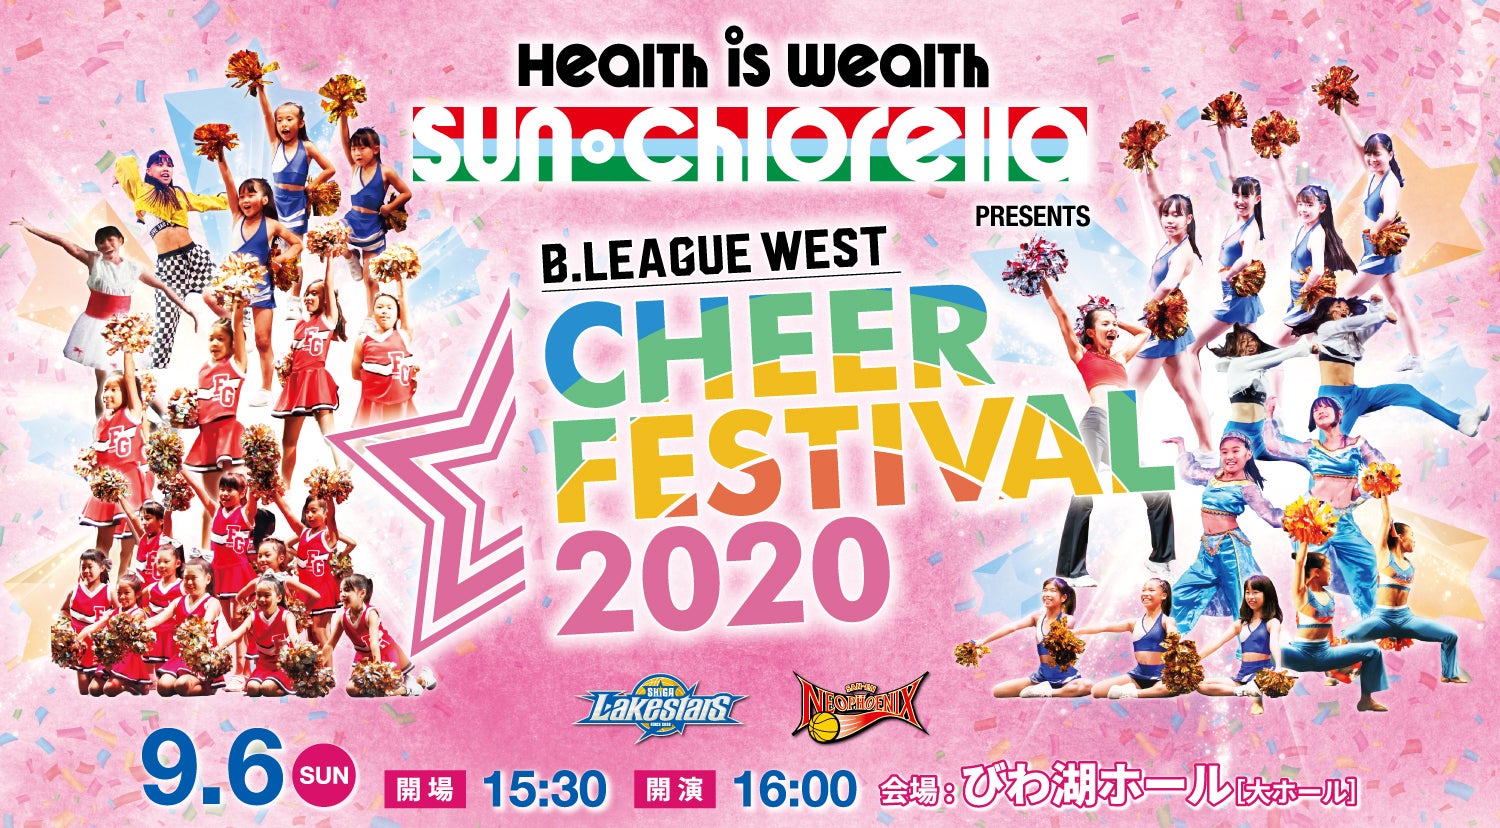 9 6 日 開催 サン クロレラ Presents B League West チアフェスティバル 滋賀レイクスターズ